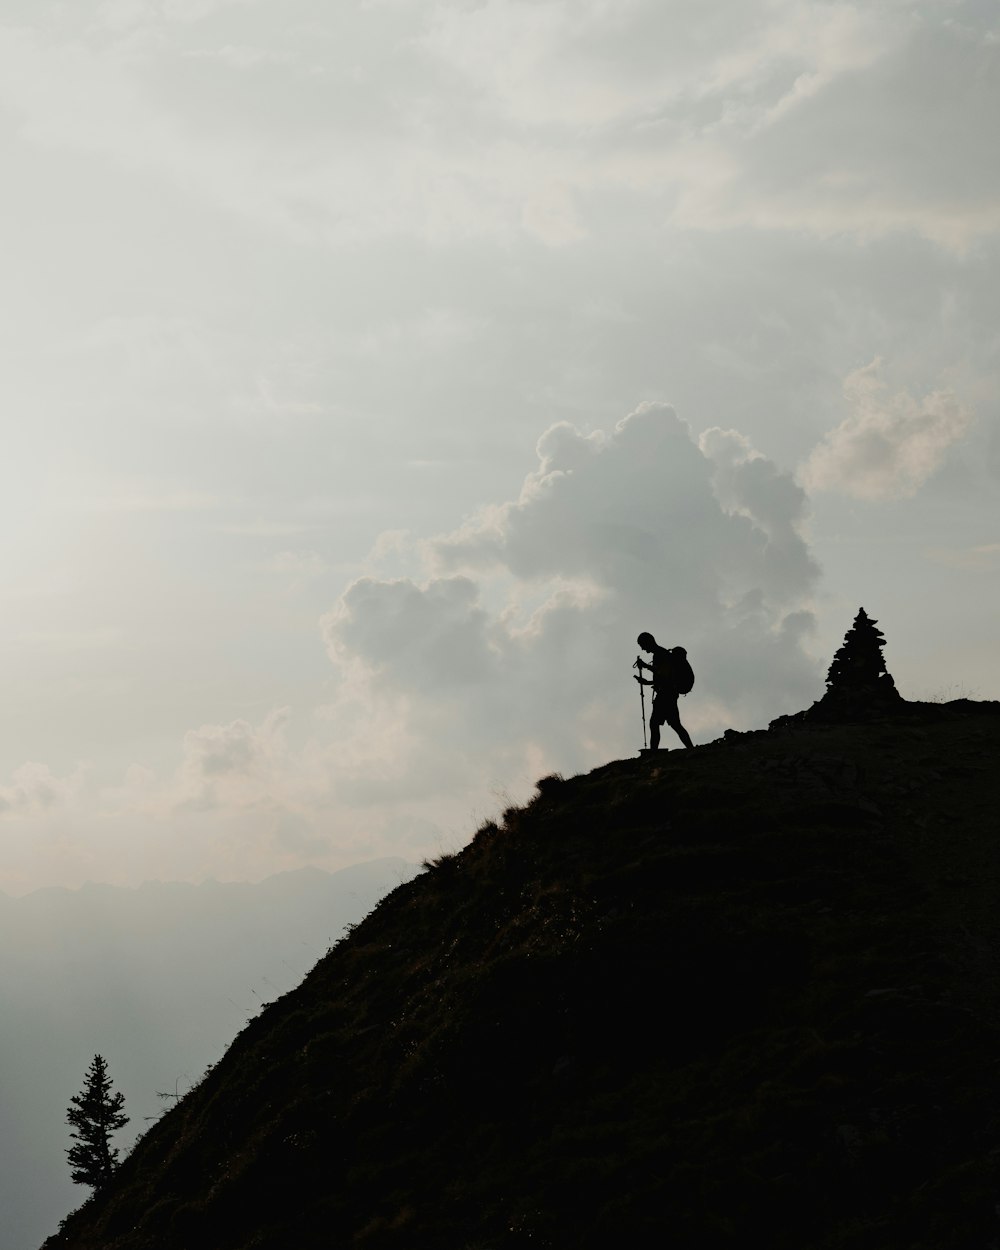 silueta de la persona de pie en la cima de la montaña durante el día